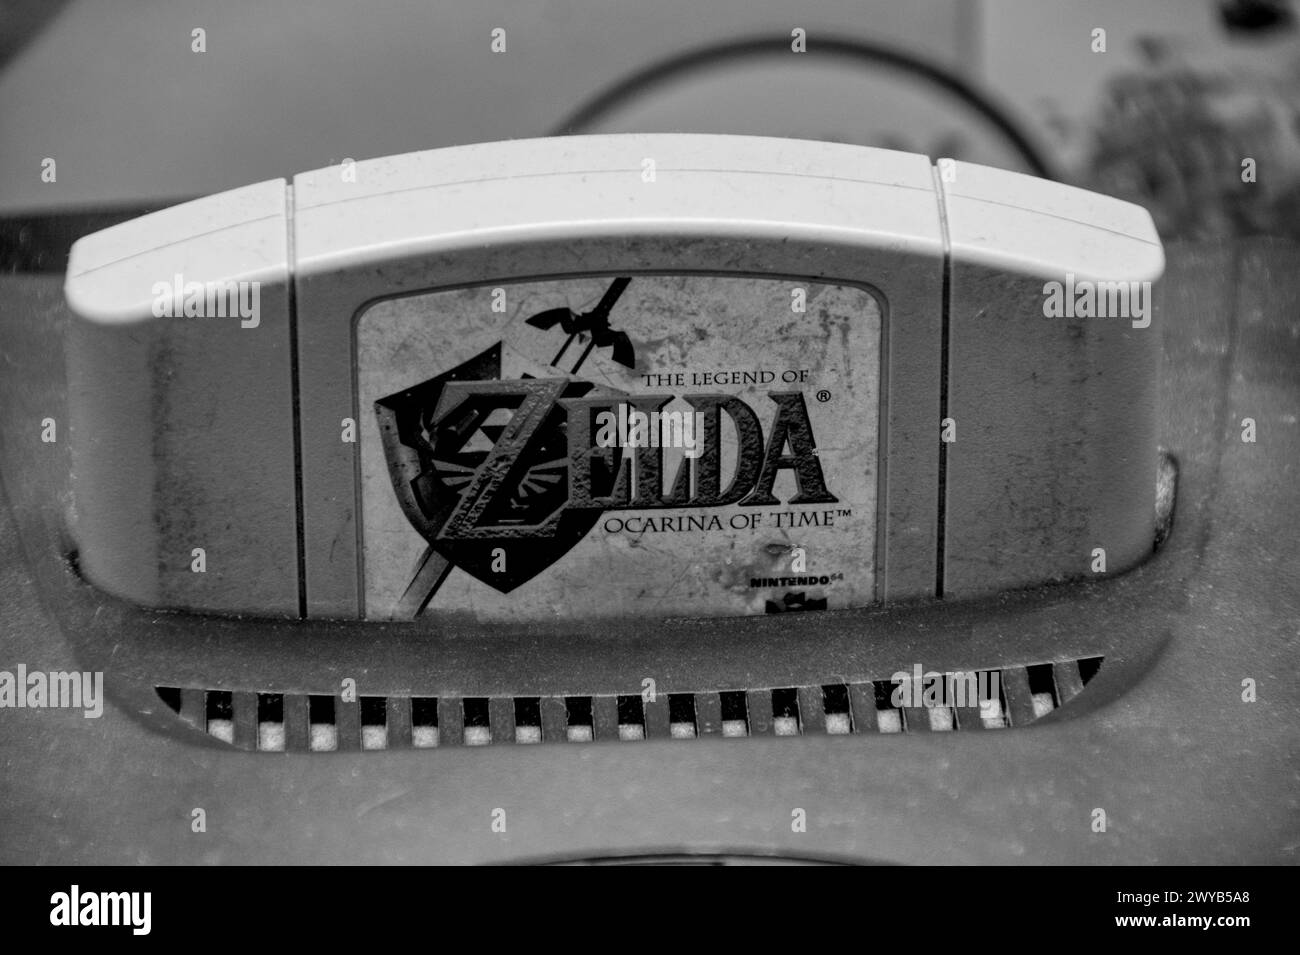 Schwarz-weiß-Foto eines alten staubigen Nintendo 64 mit einem Legend of Zelda-Spiel auf der Konsole Stockfoto